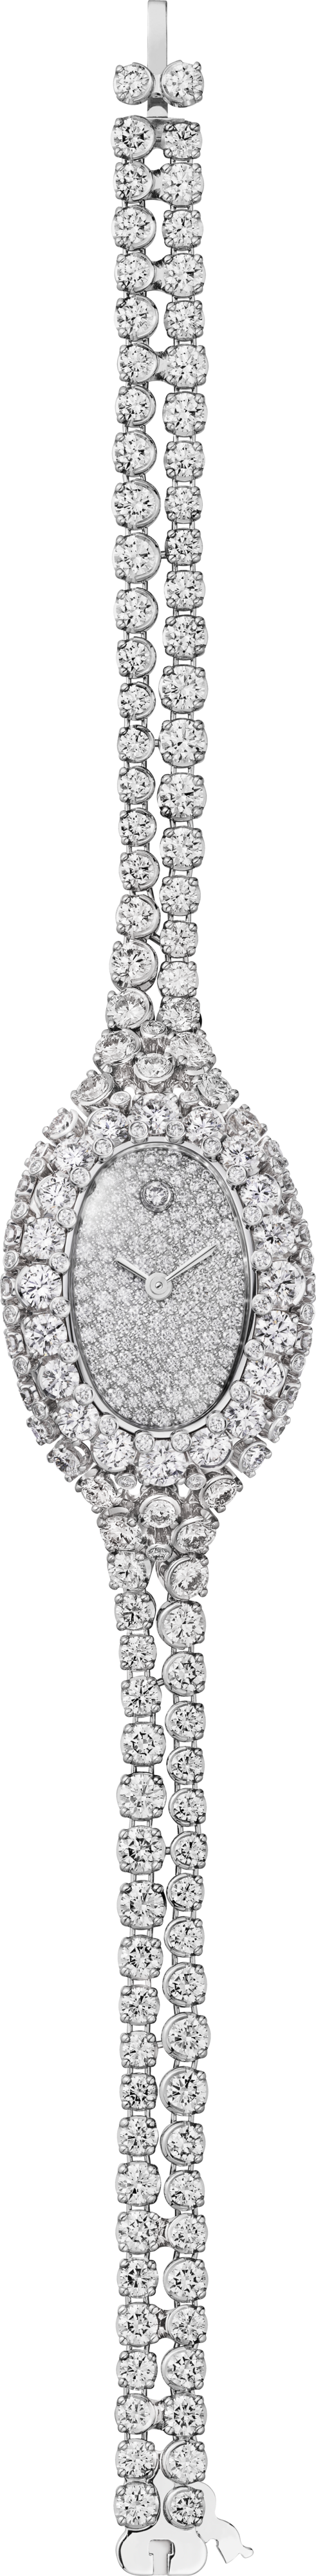 Reloj joya Baignoire Tamaño mini, movimiento de cuarzo, oro blanco, diamantes